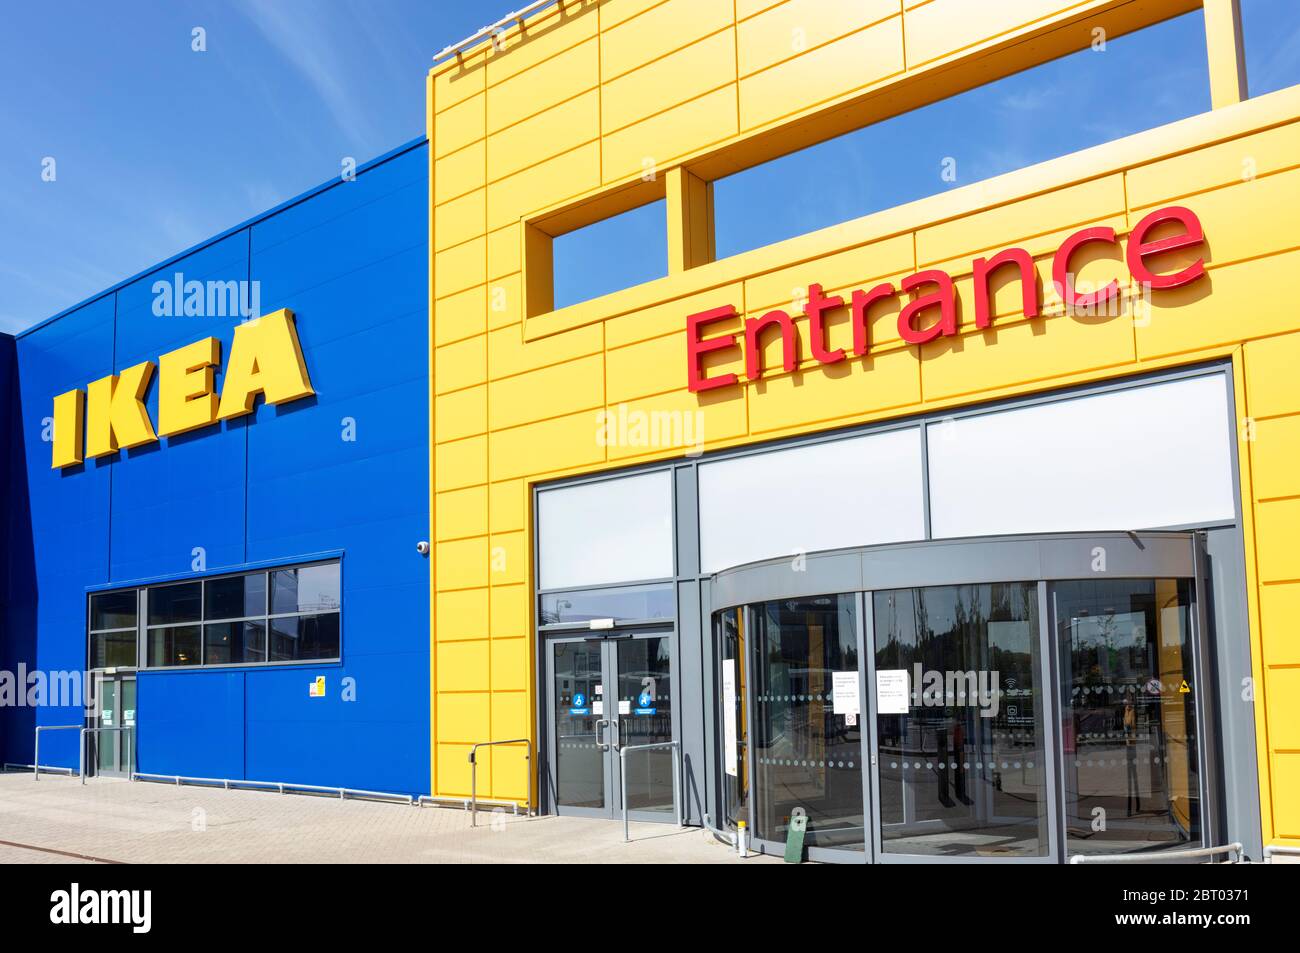 Entrée IKEA panneau jaune IKEA sur le côté de l'entrepôt IKEA bleu dans le parc de vente Giltbrook, Giltbrook, Nottingham East Midlands England gb Banque D'Images